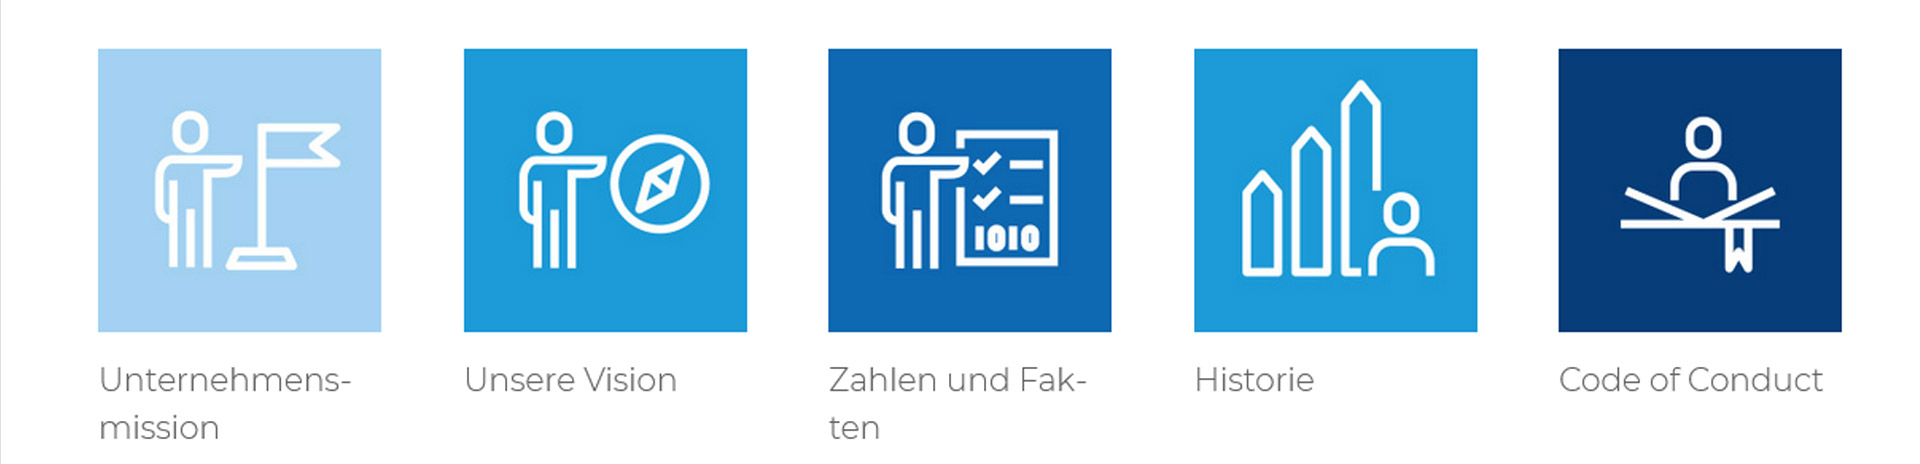 Verschiedene Icon-Grafiken in weiß auf blau